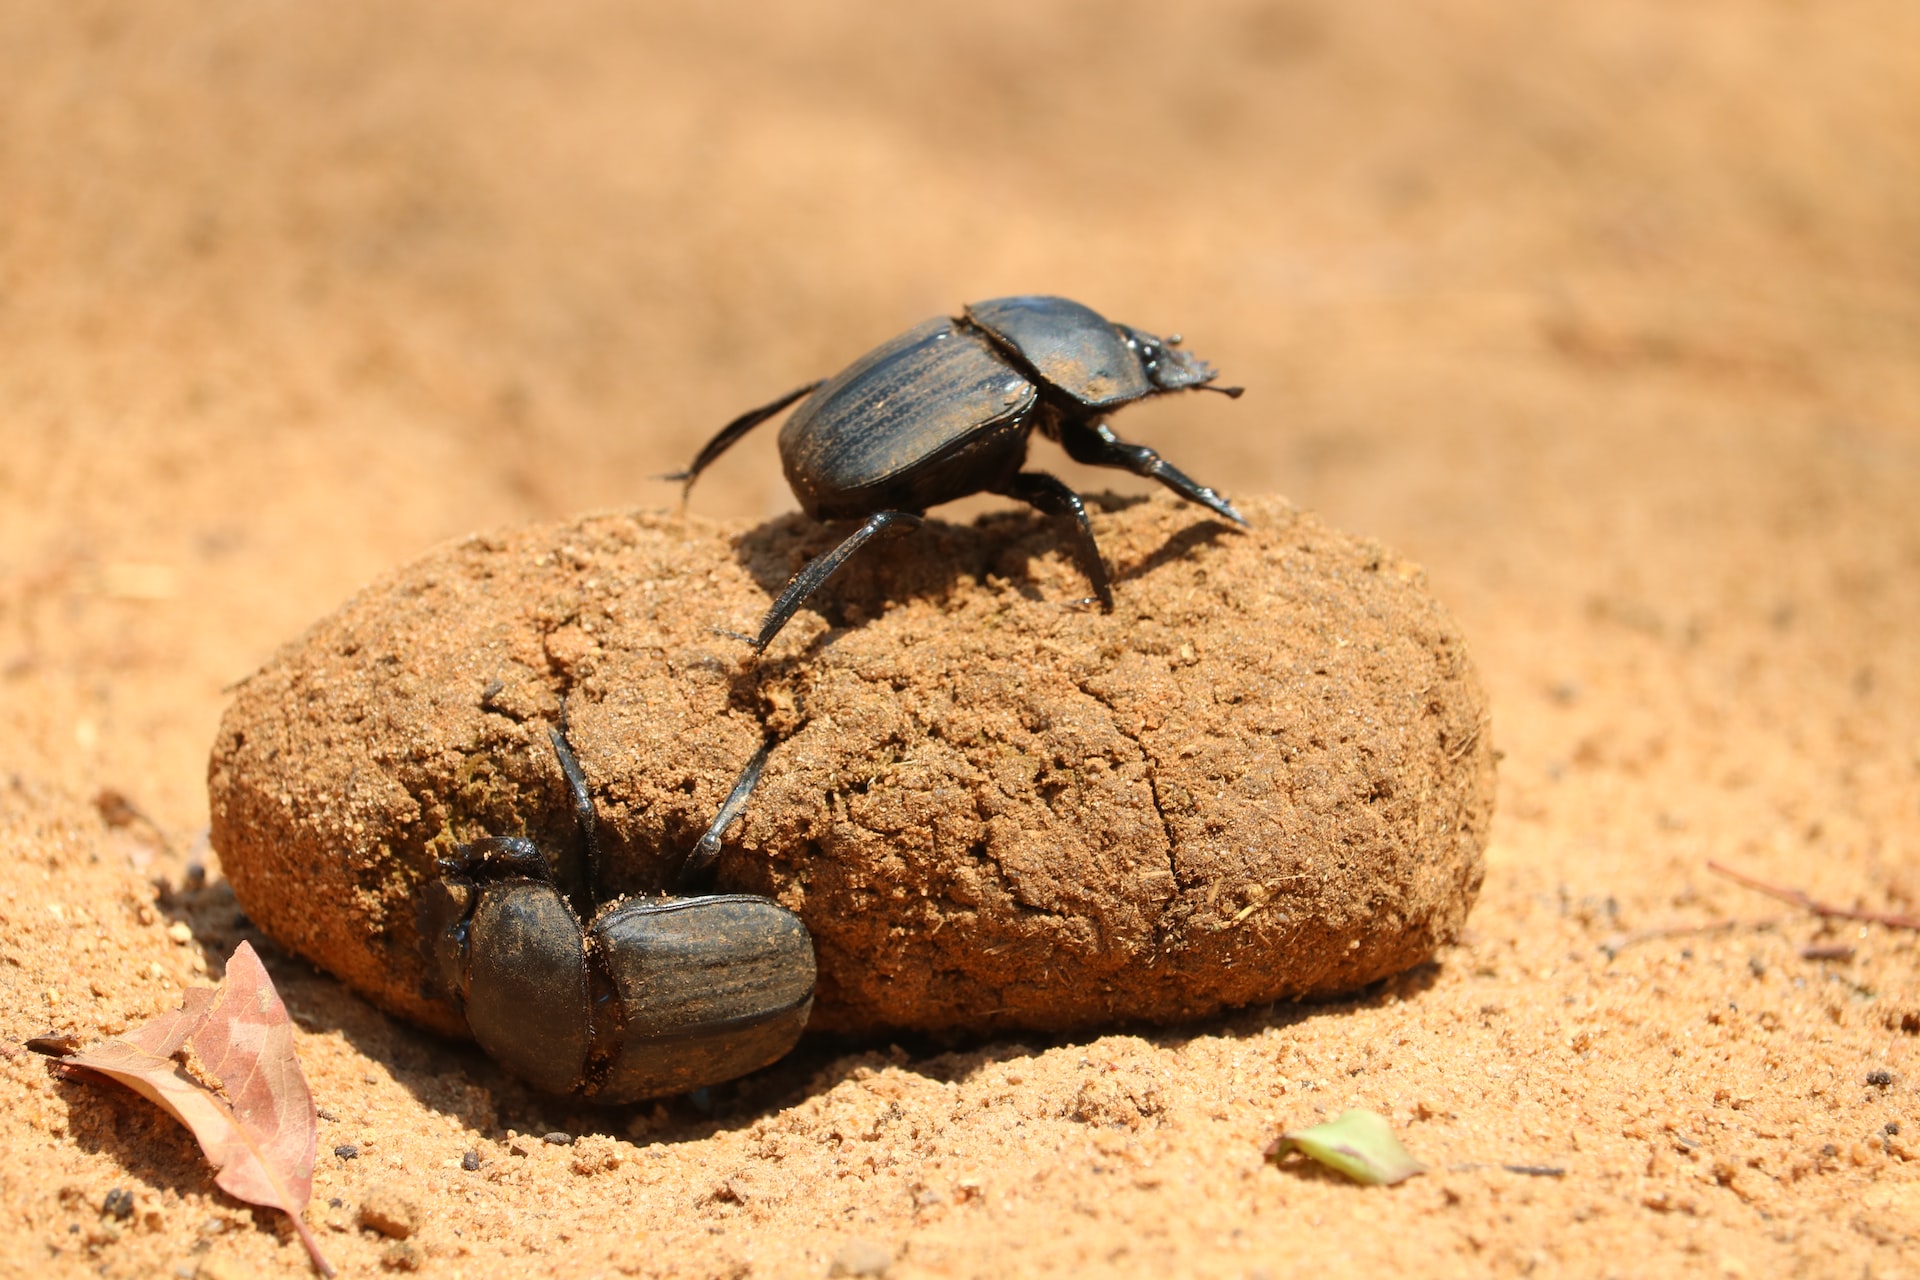 Beetles on a poop